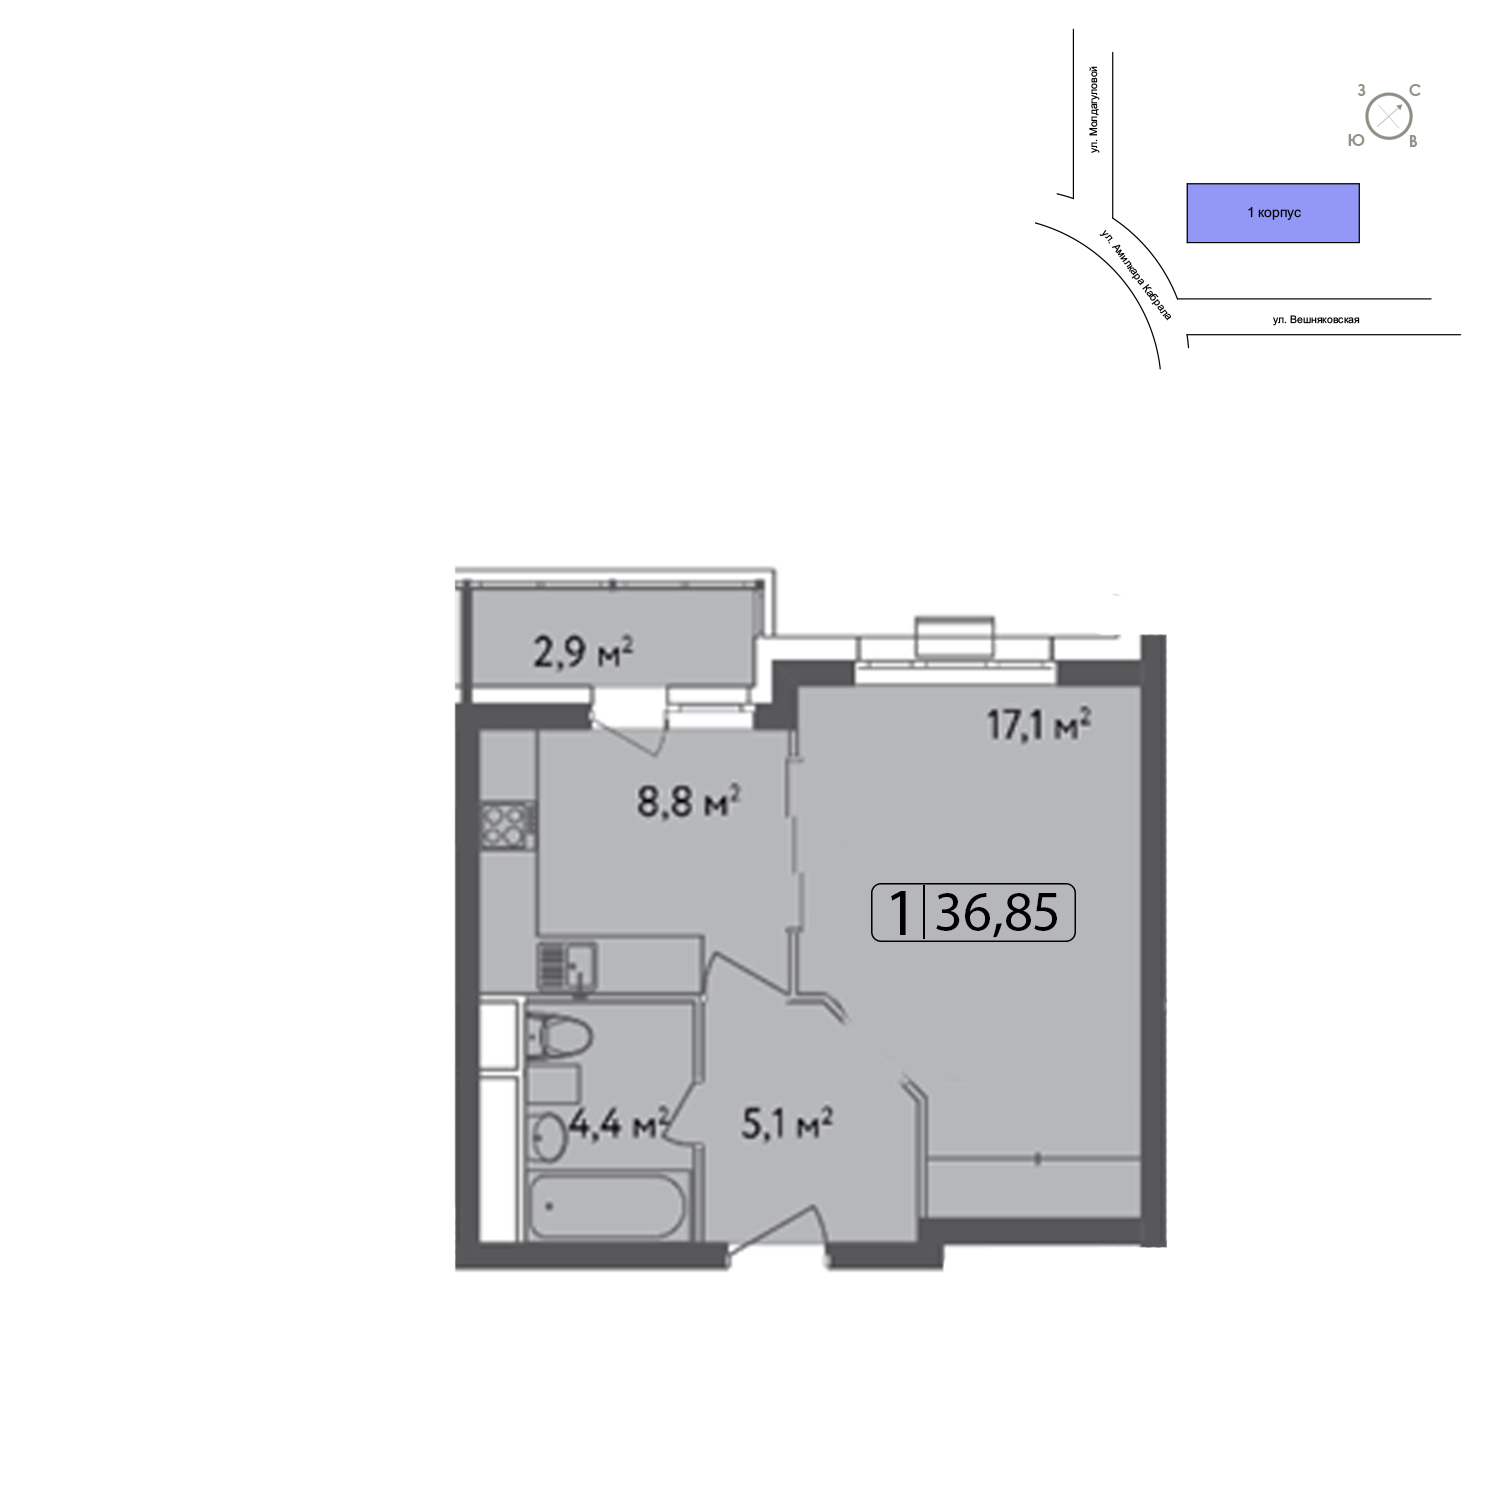 Продаётся 1-комнатная квартира в новостройке 38.5 кв.м. этаж 2/13 за 7 904 000 руб 